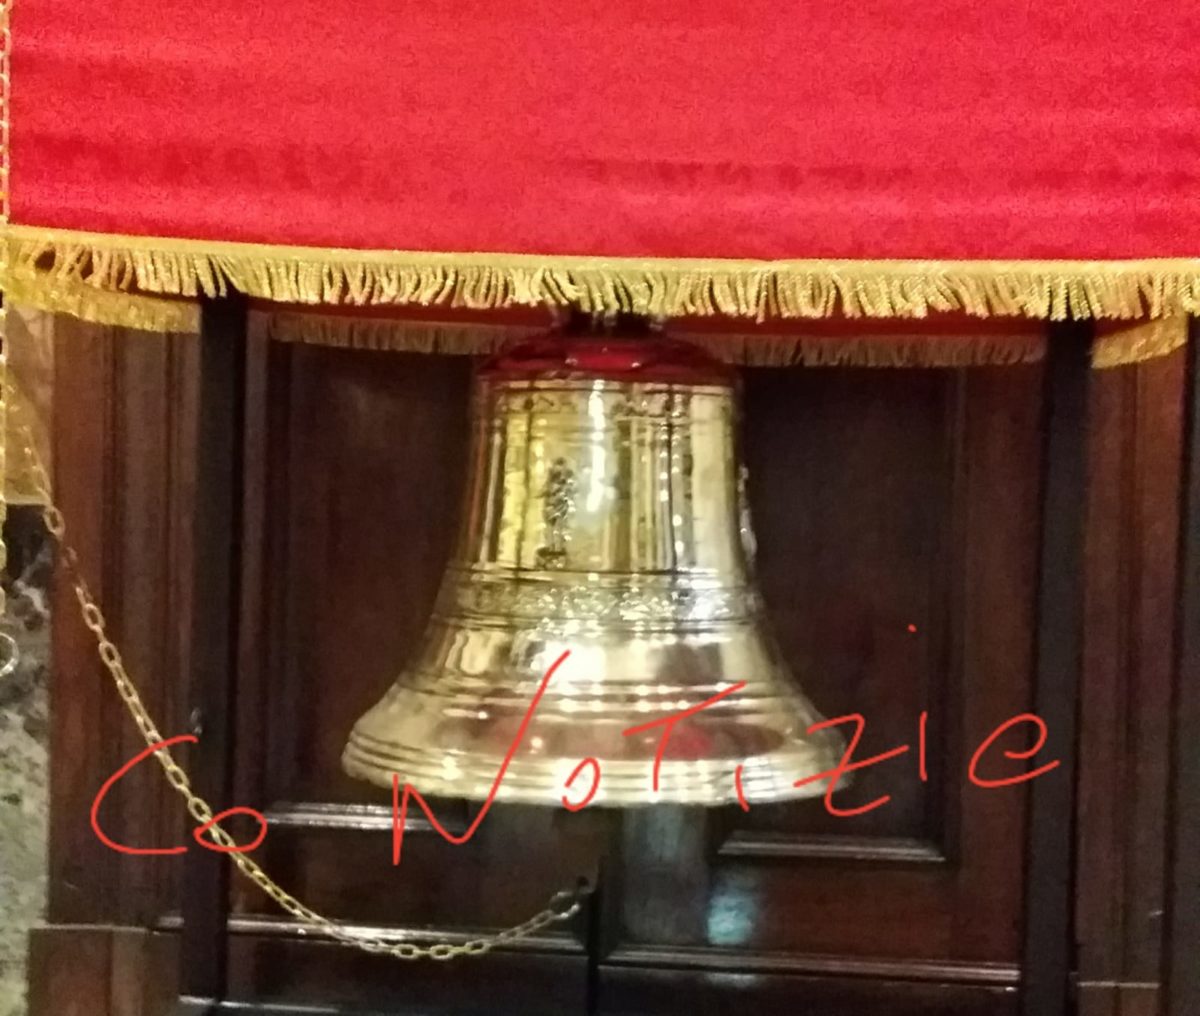 . Ritrovata a Corbetta un'antica campana. Al via i lavori del tetto della chiesa corbettese e nuove nomine per il parroco di Vittuone - 09/05/2019